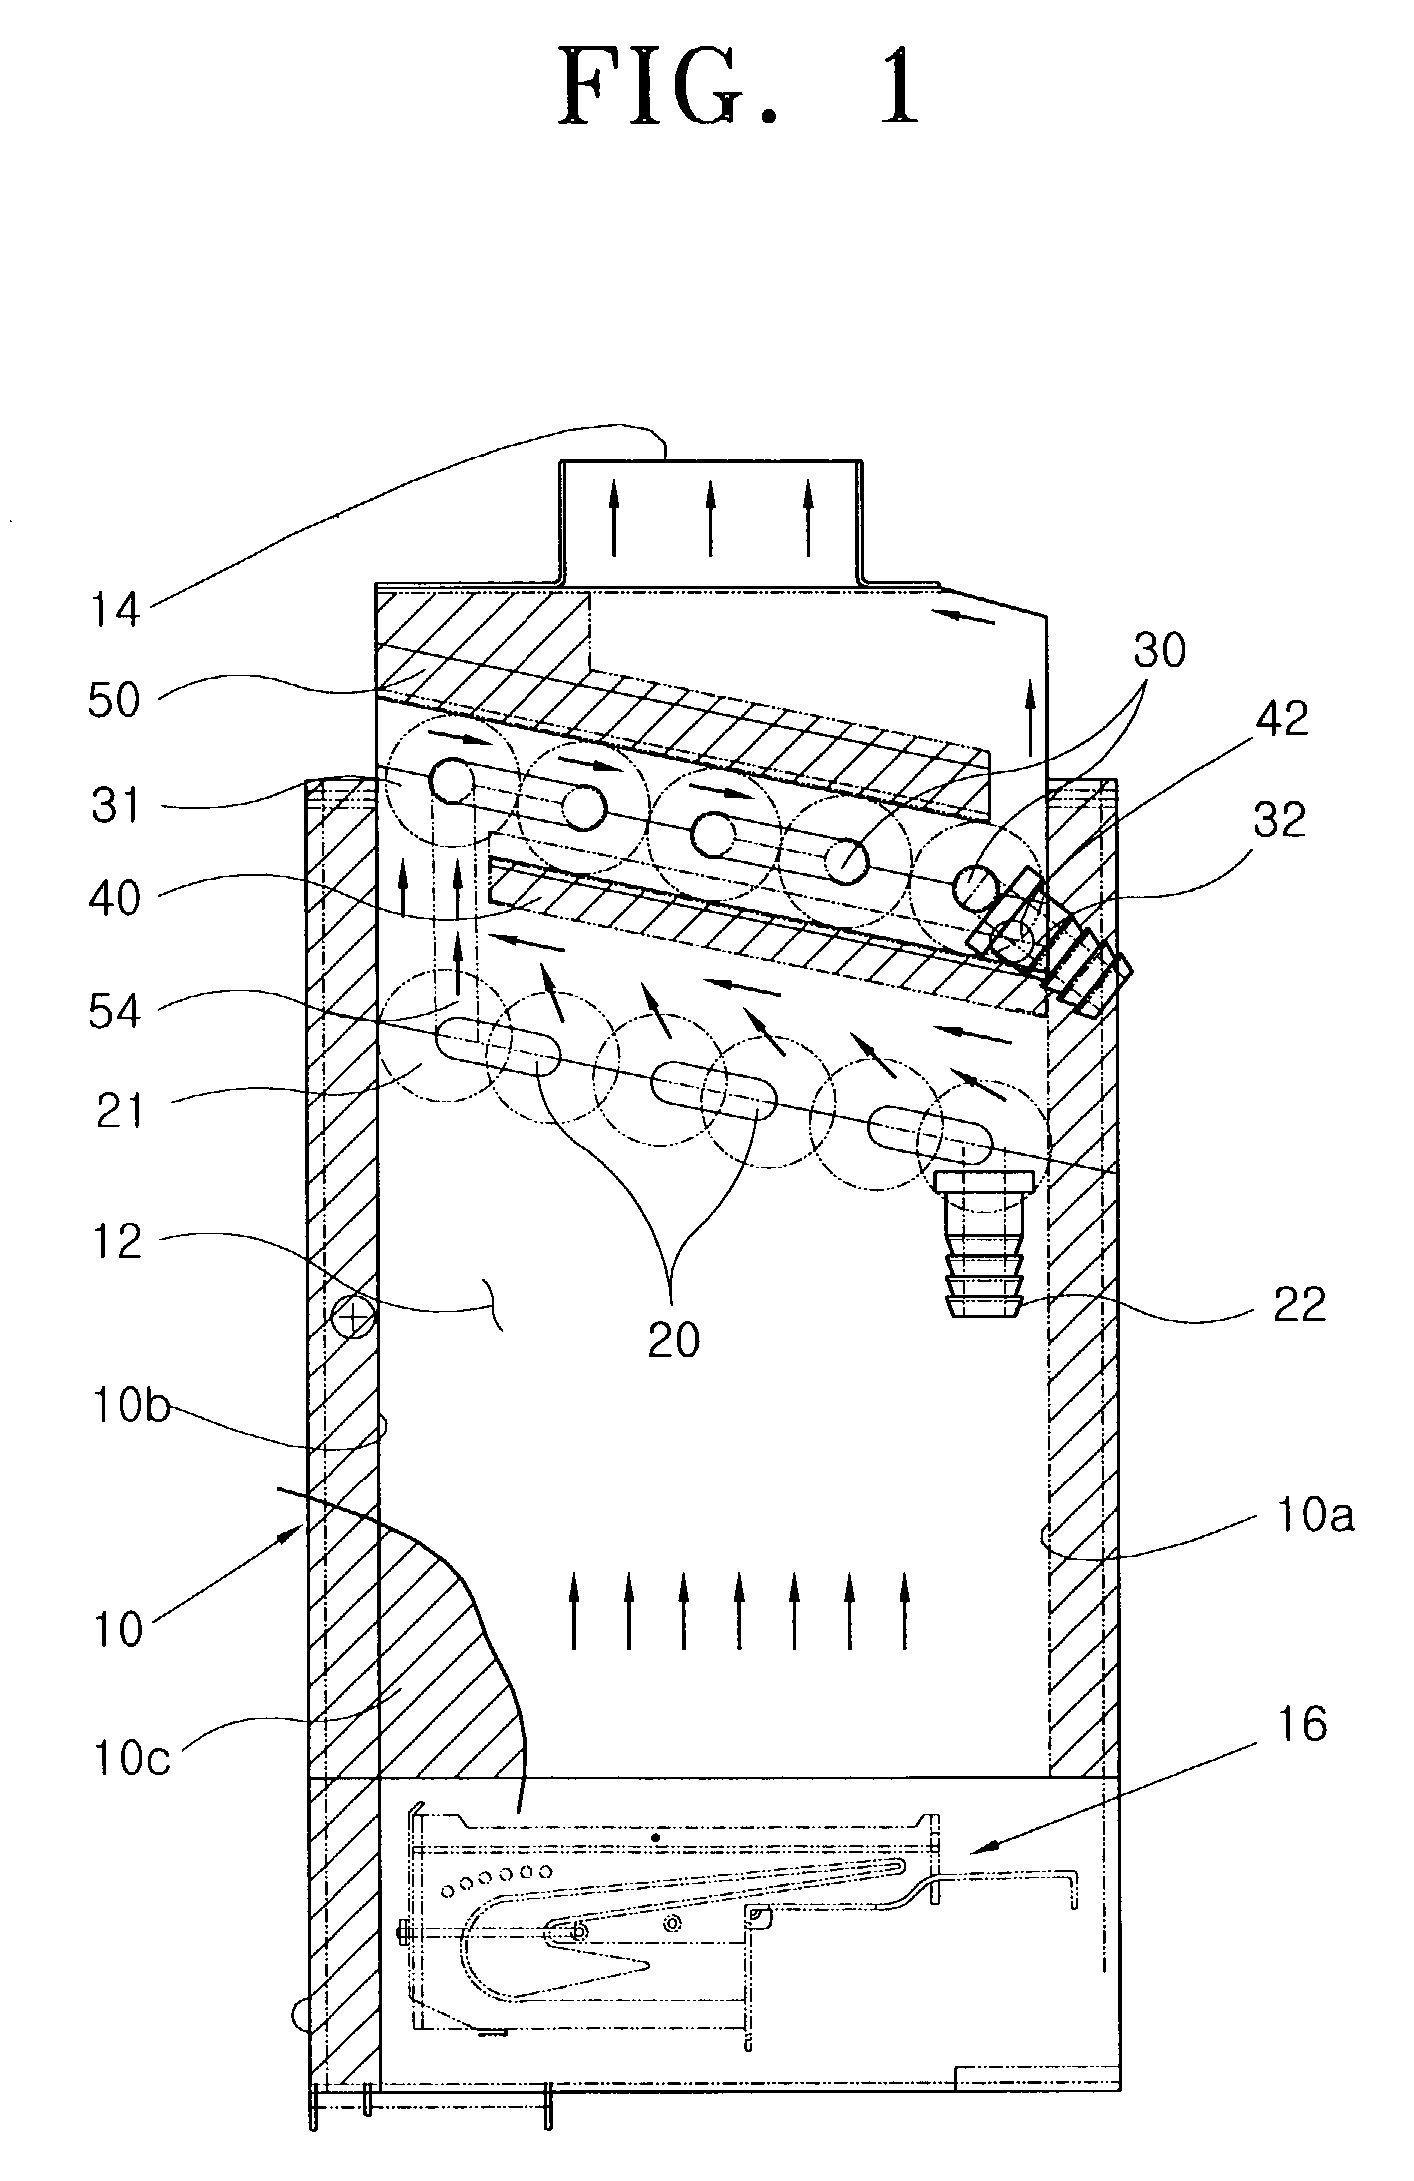 Arrangement structure of heat exchanger in condensing gas boiler